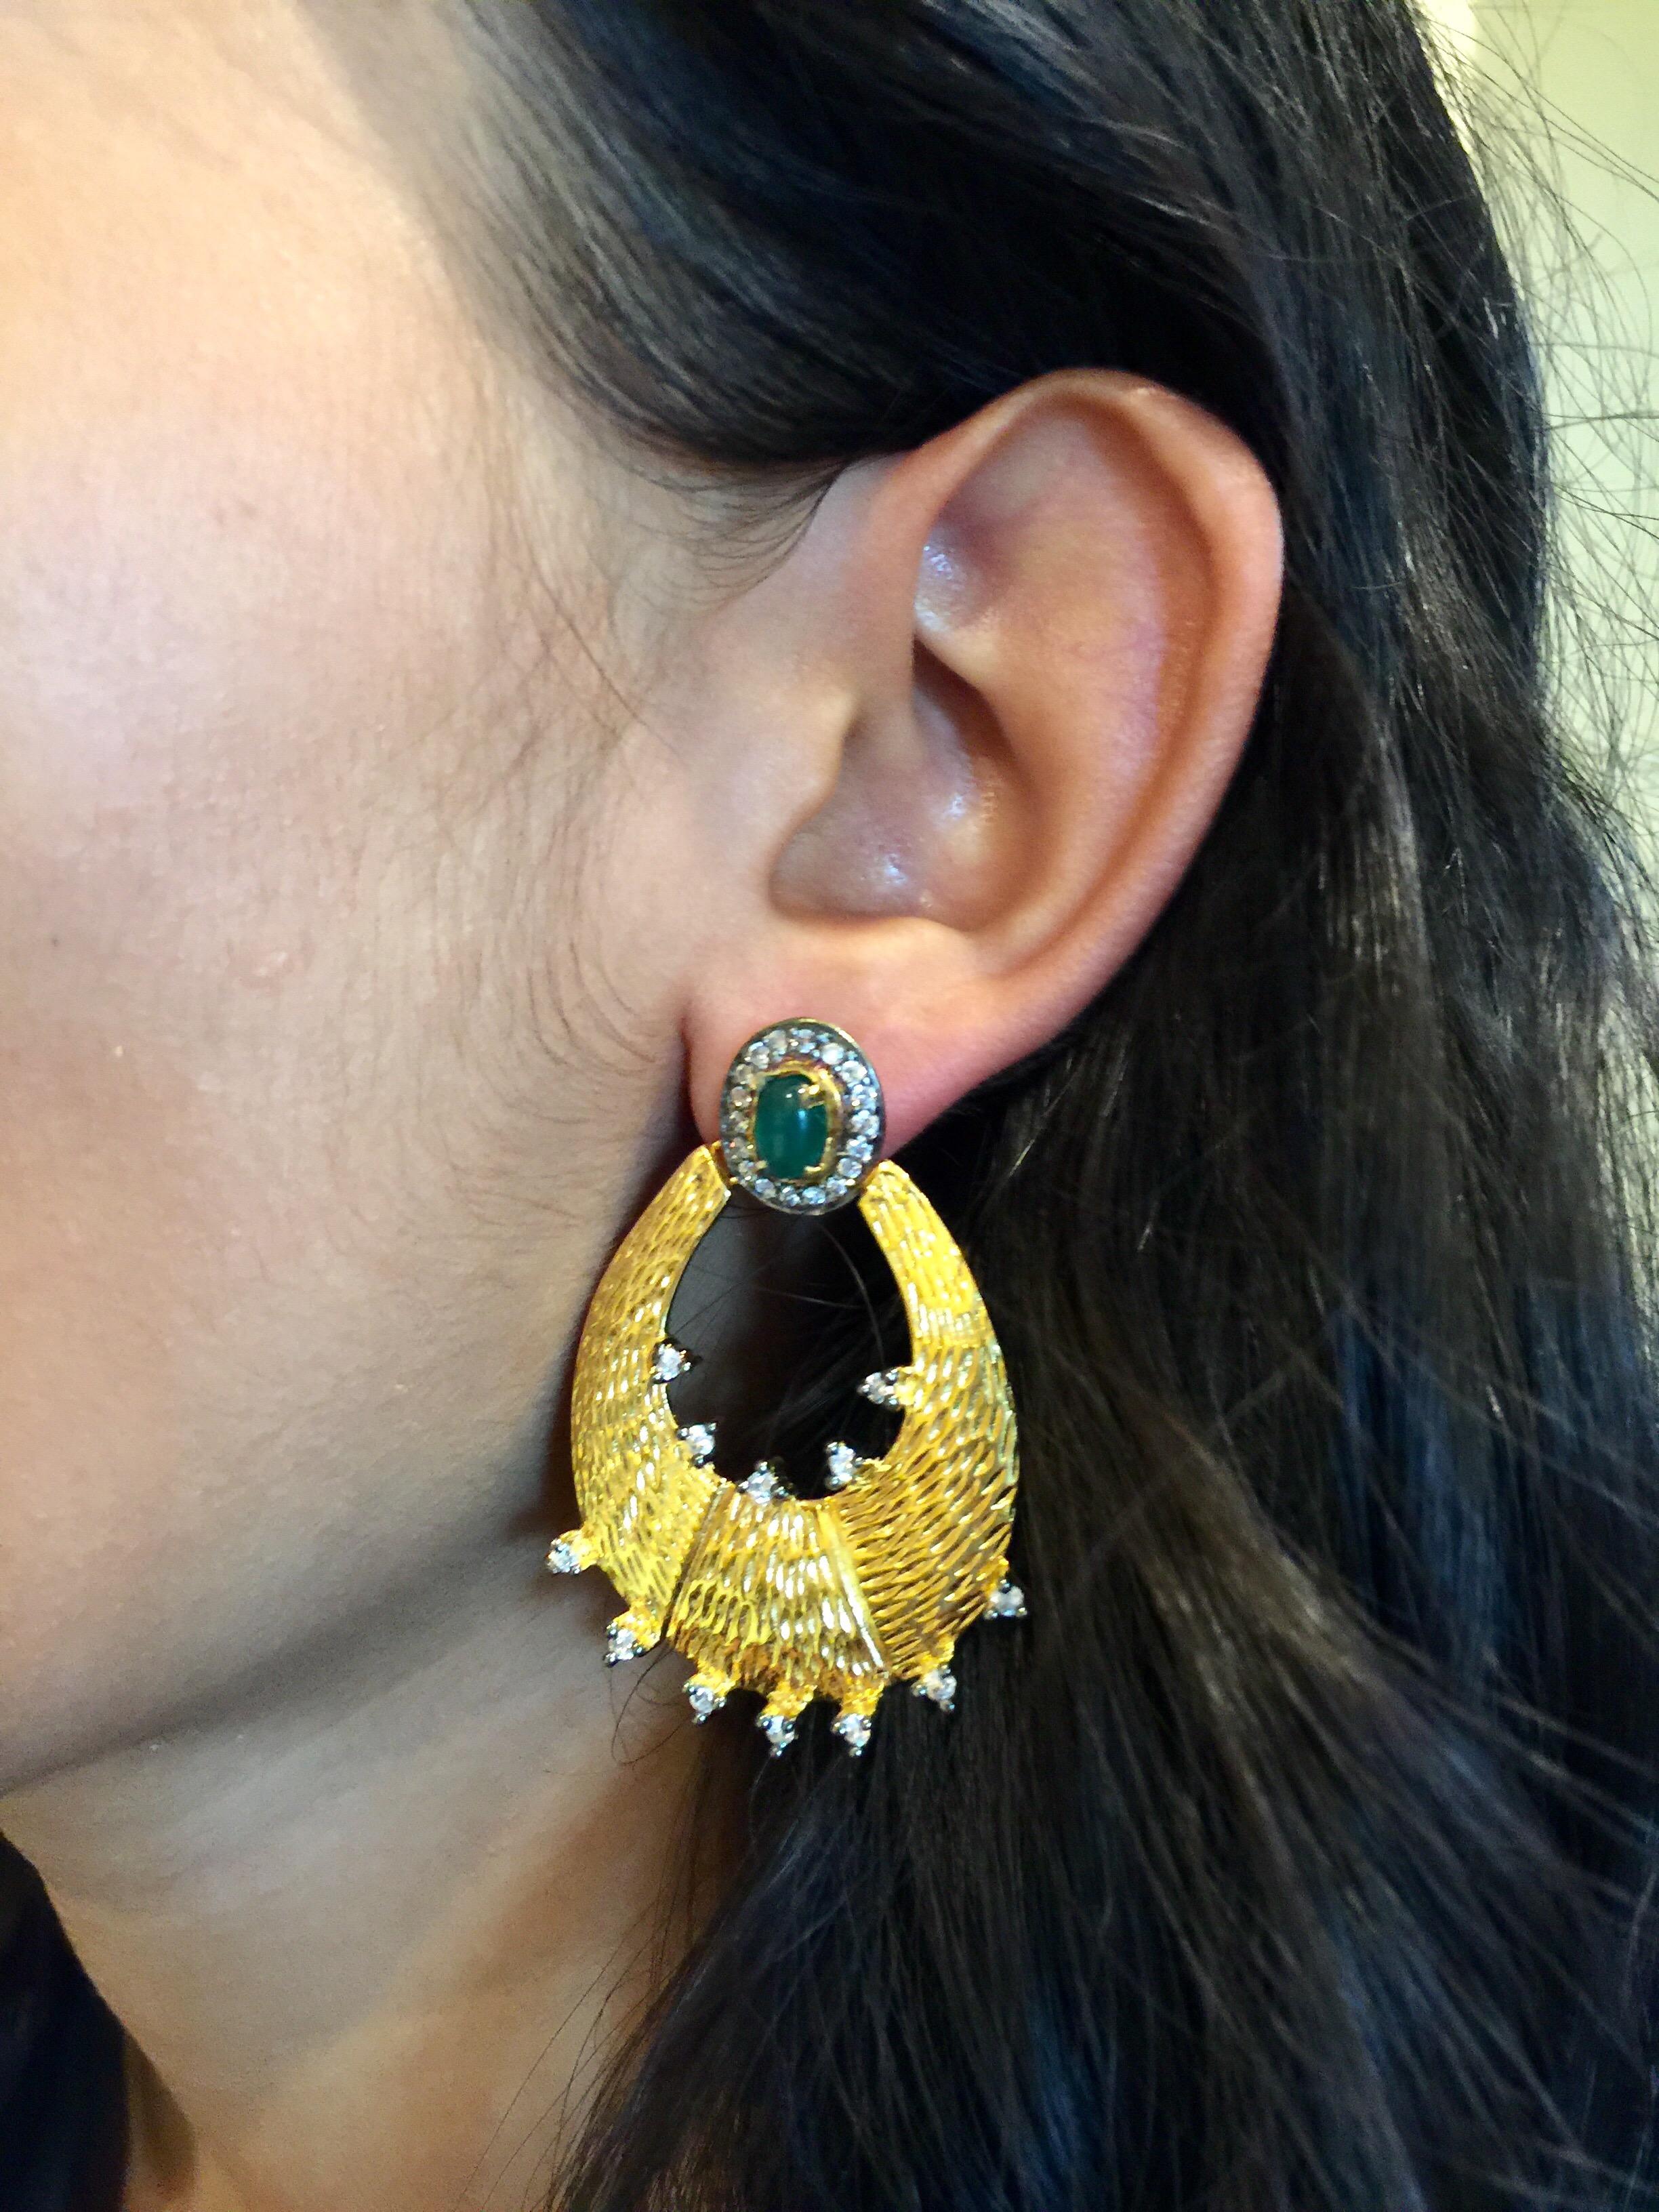 Women's Meghna Jewels Saya Earrings as seen in “Gossip Girl”! Worn by Kelly Rutherford